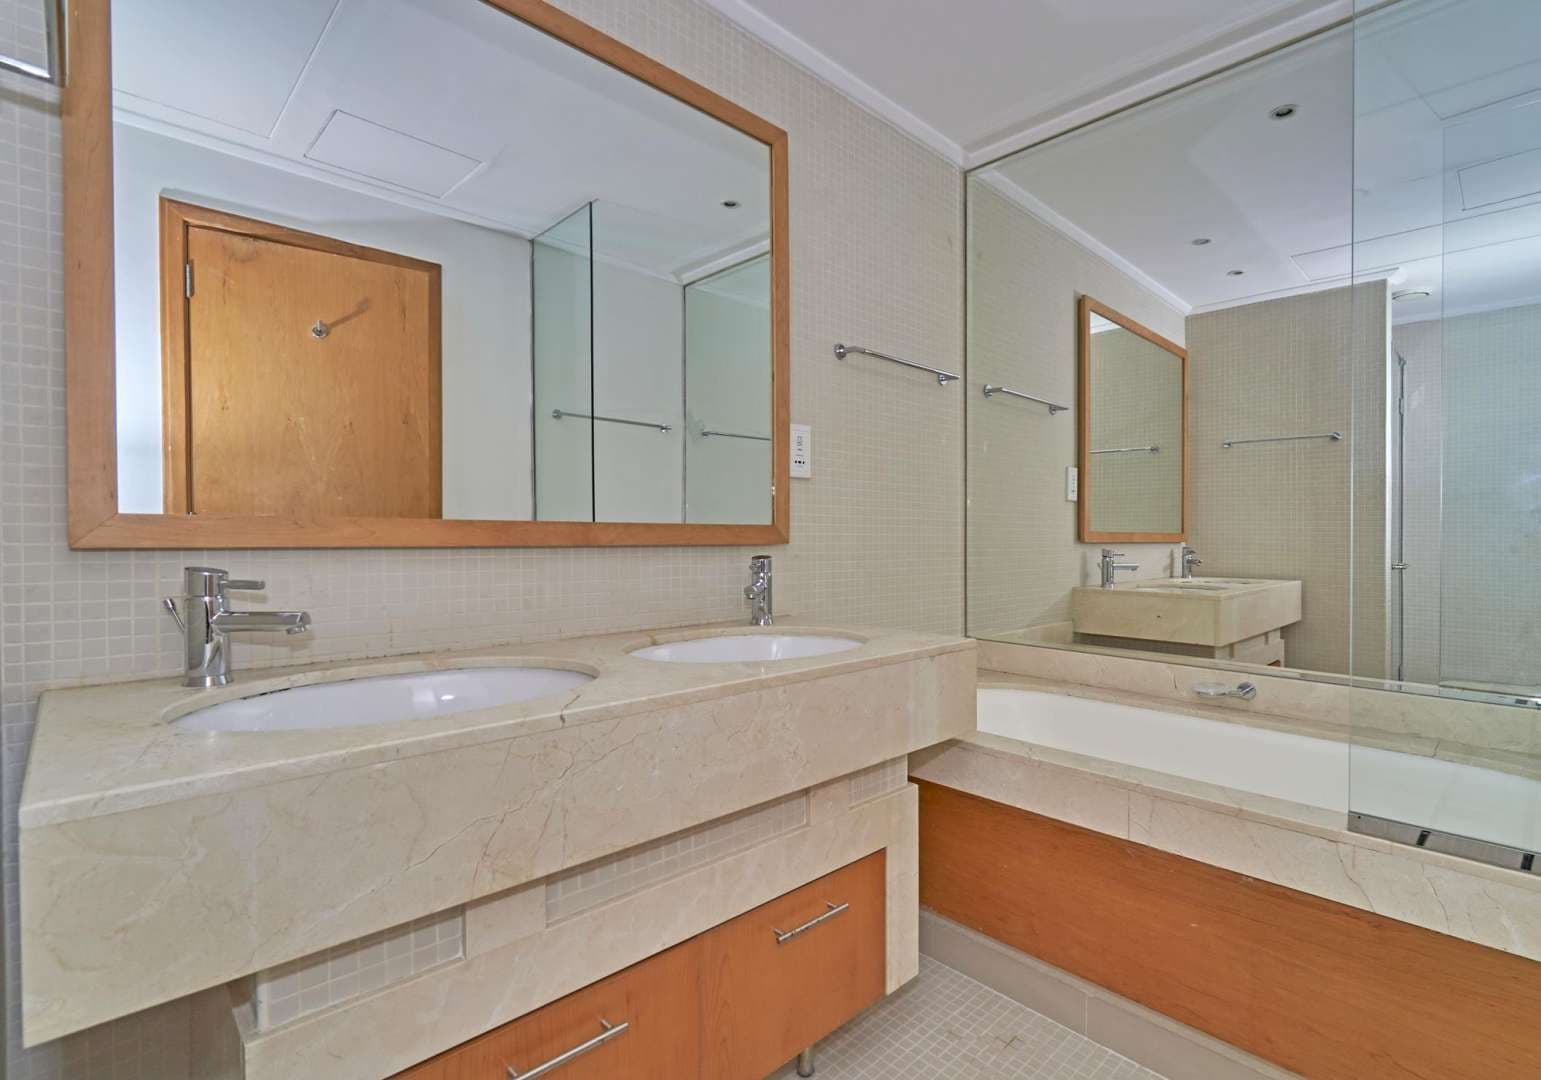 2 Bedroom Apartment For Rent Marina Promenade Lp05396 F37384cab0e2880.jpg